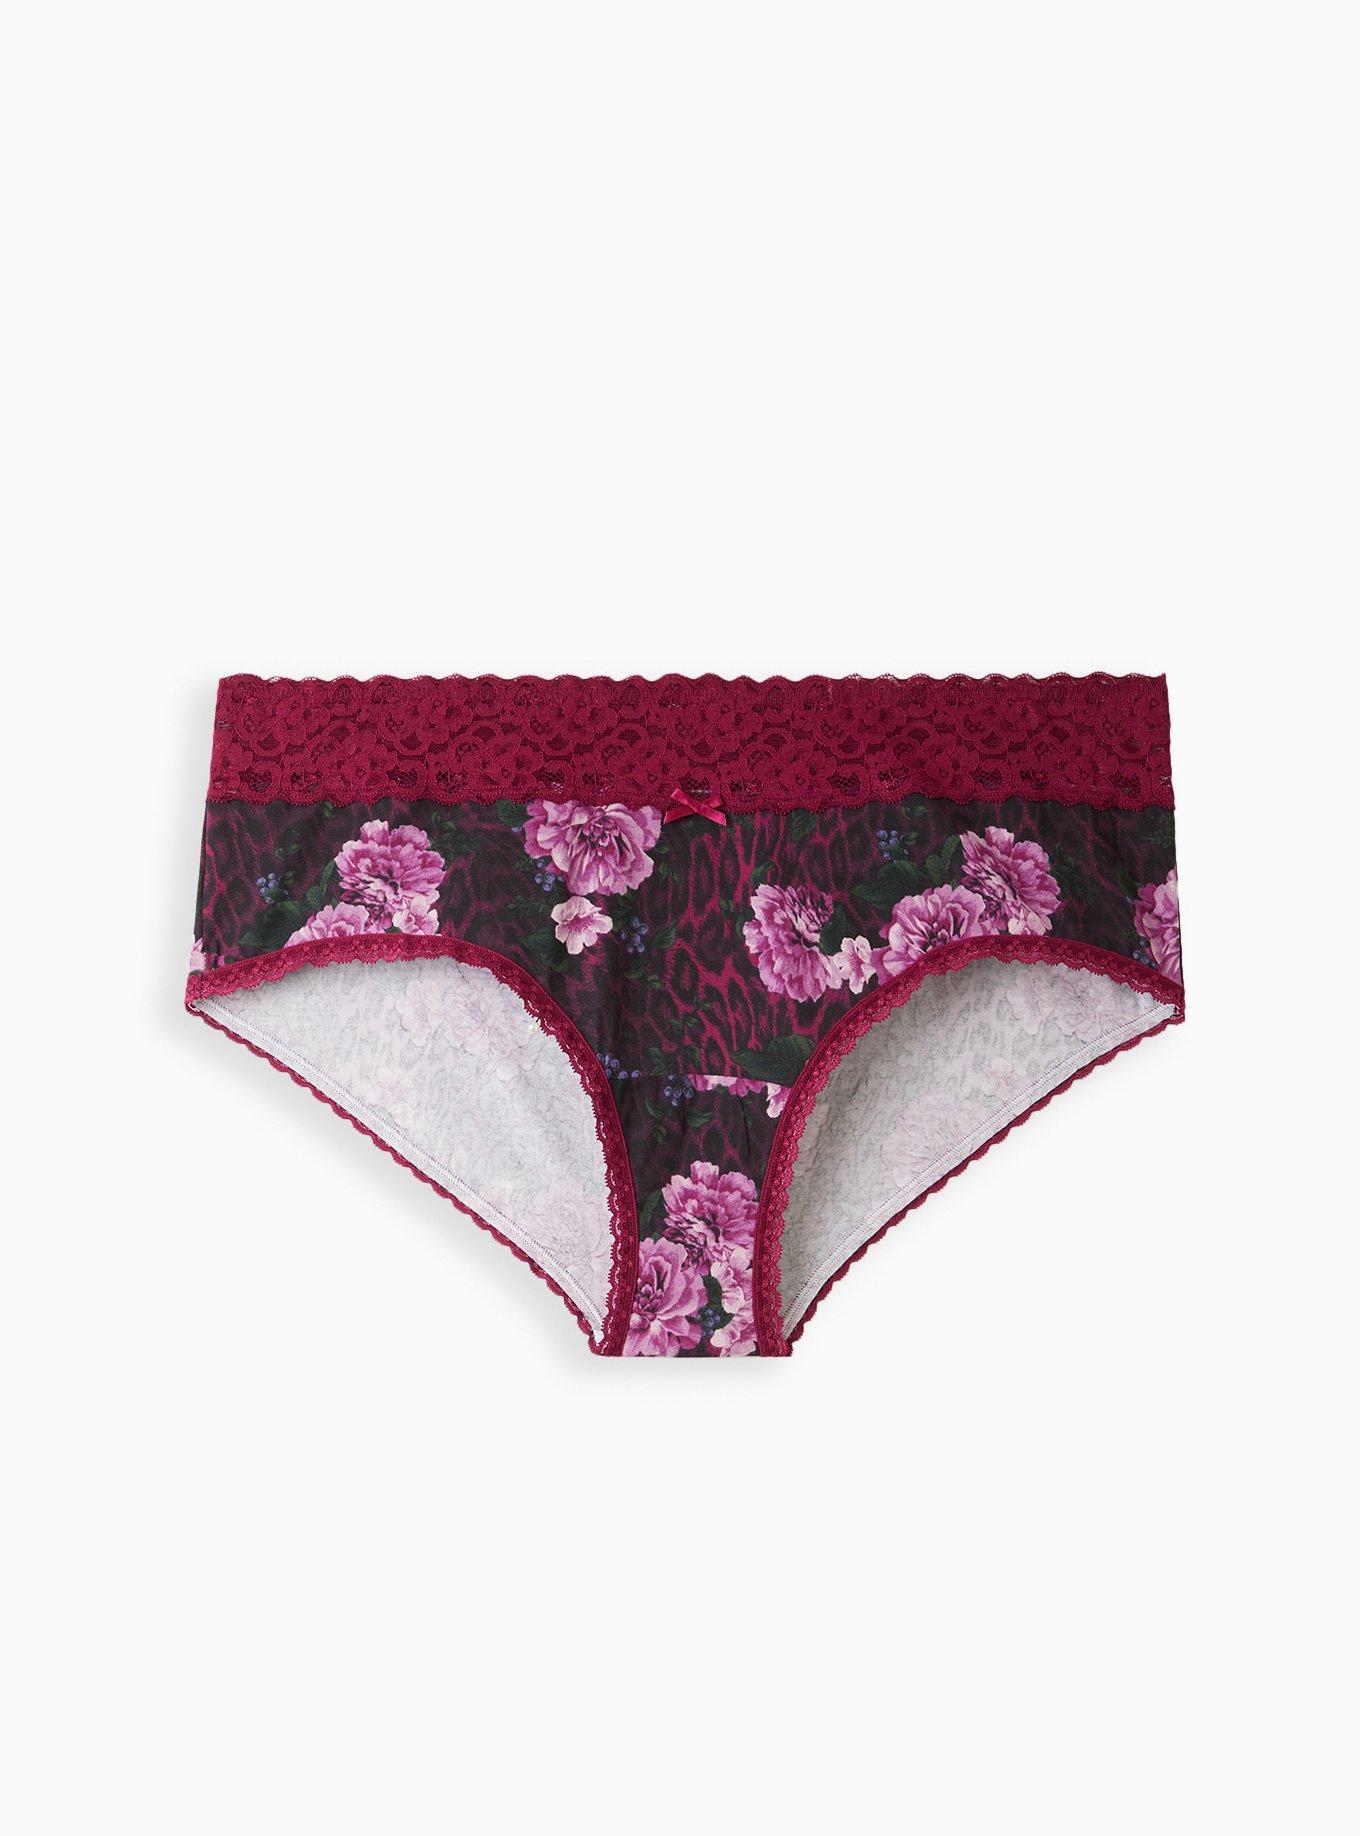 Plus Size - Cotton Mid-Rise Cheeky Lace Trim Panty - Torrid